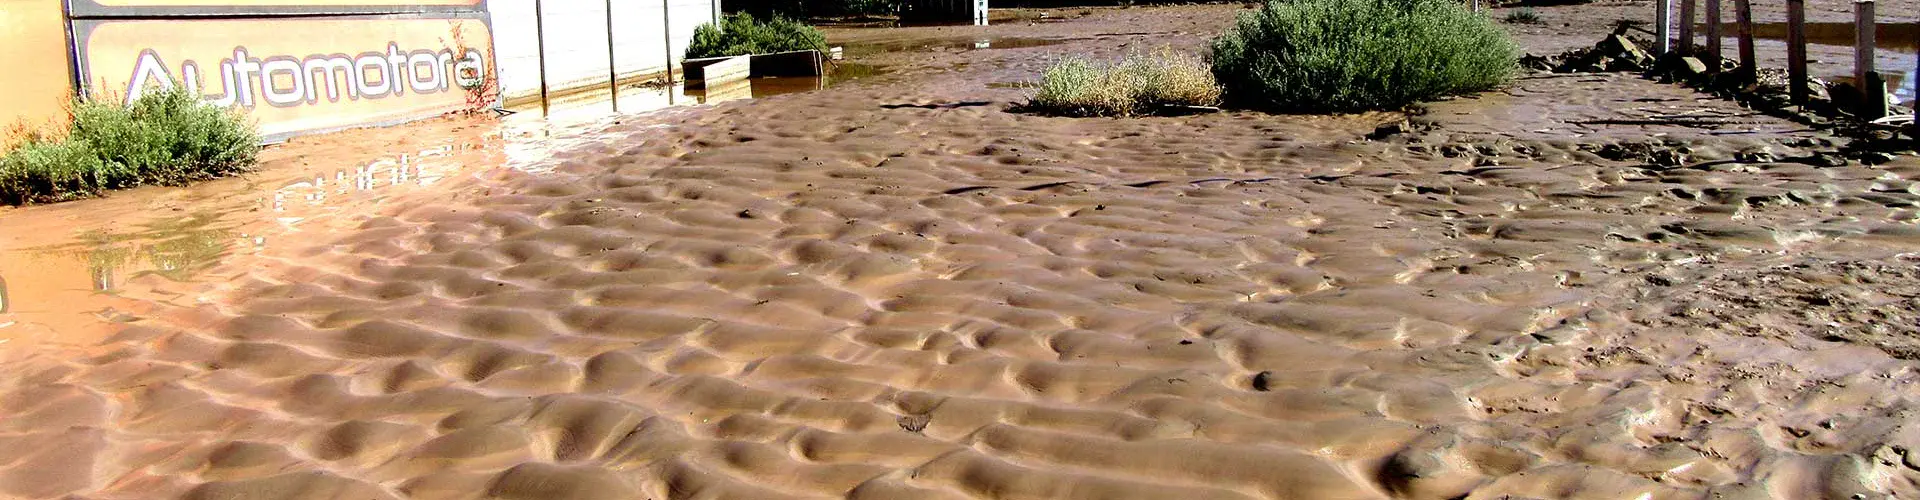 Catastrophic floods in the Atacama Desert (Credit: Manu Abad via Imaggeo)